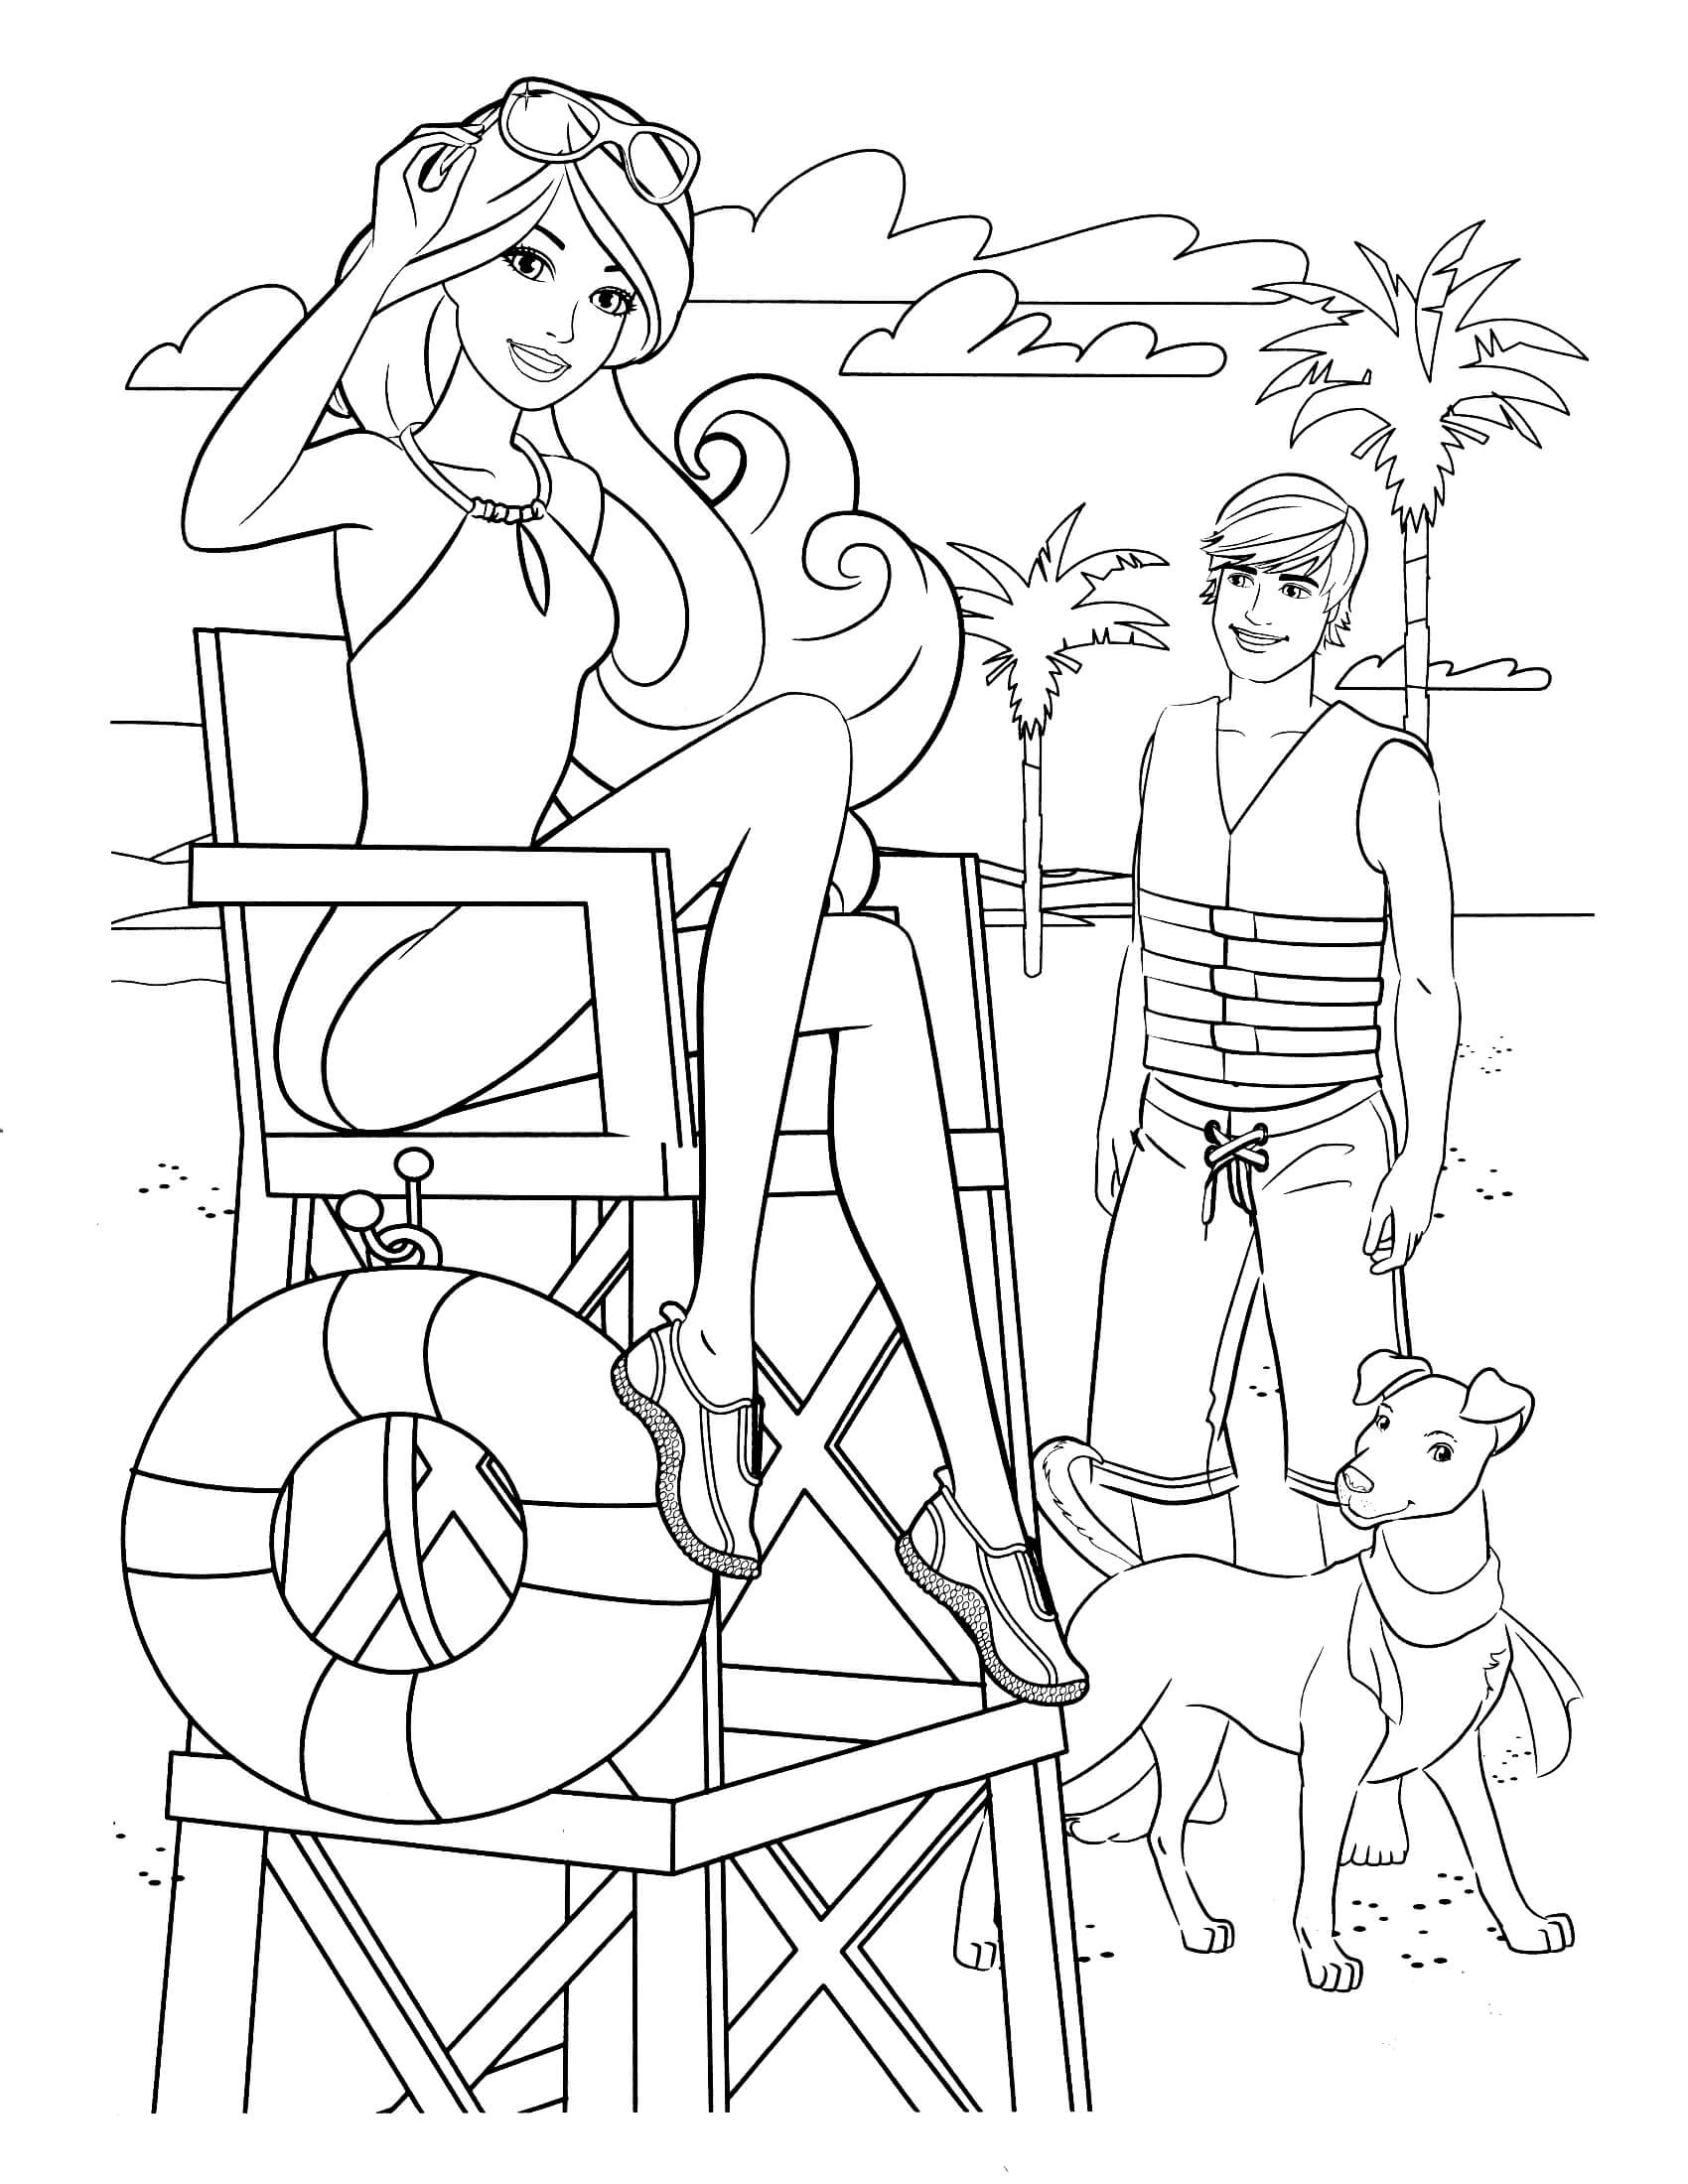 Раскраски барби а4. Раскраска Барби Скиппер. Раскраска для девочек Барби и Кен. Раскраски для девочек Барби Экстра. Раскраска Барби на пляже.